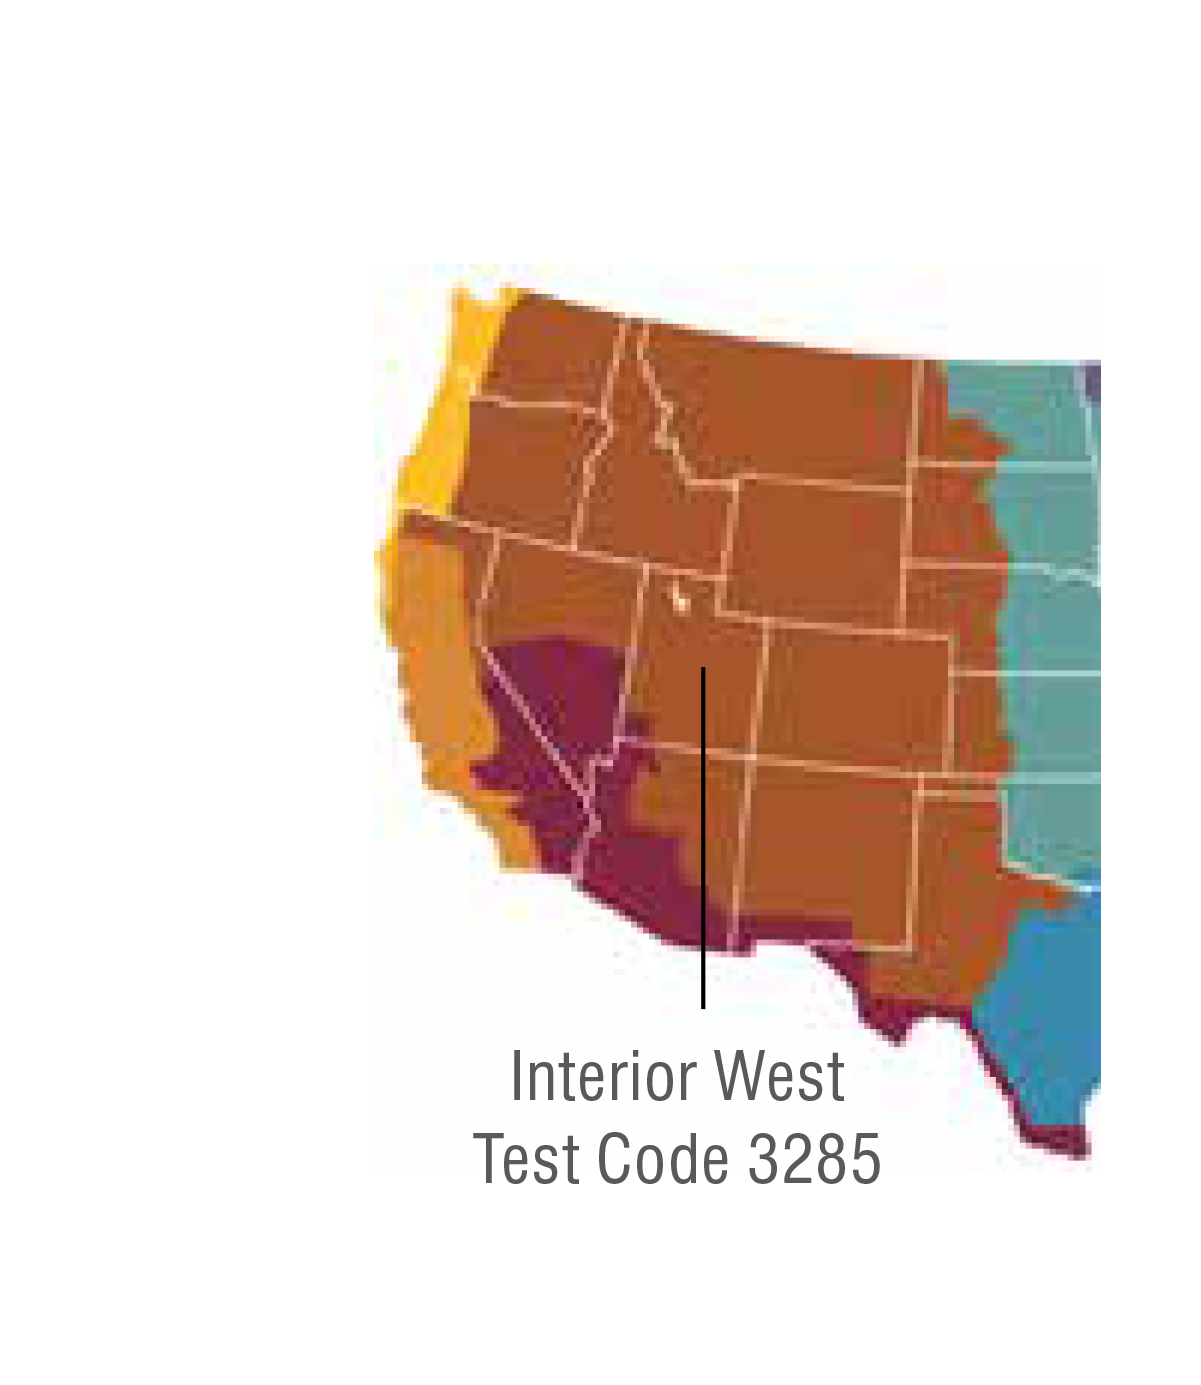 Map highlighting IDEXX's Interior West regional allergen zone